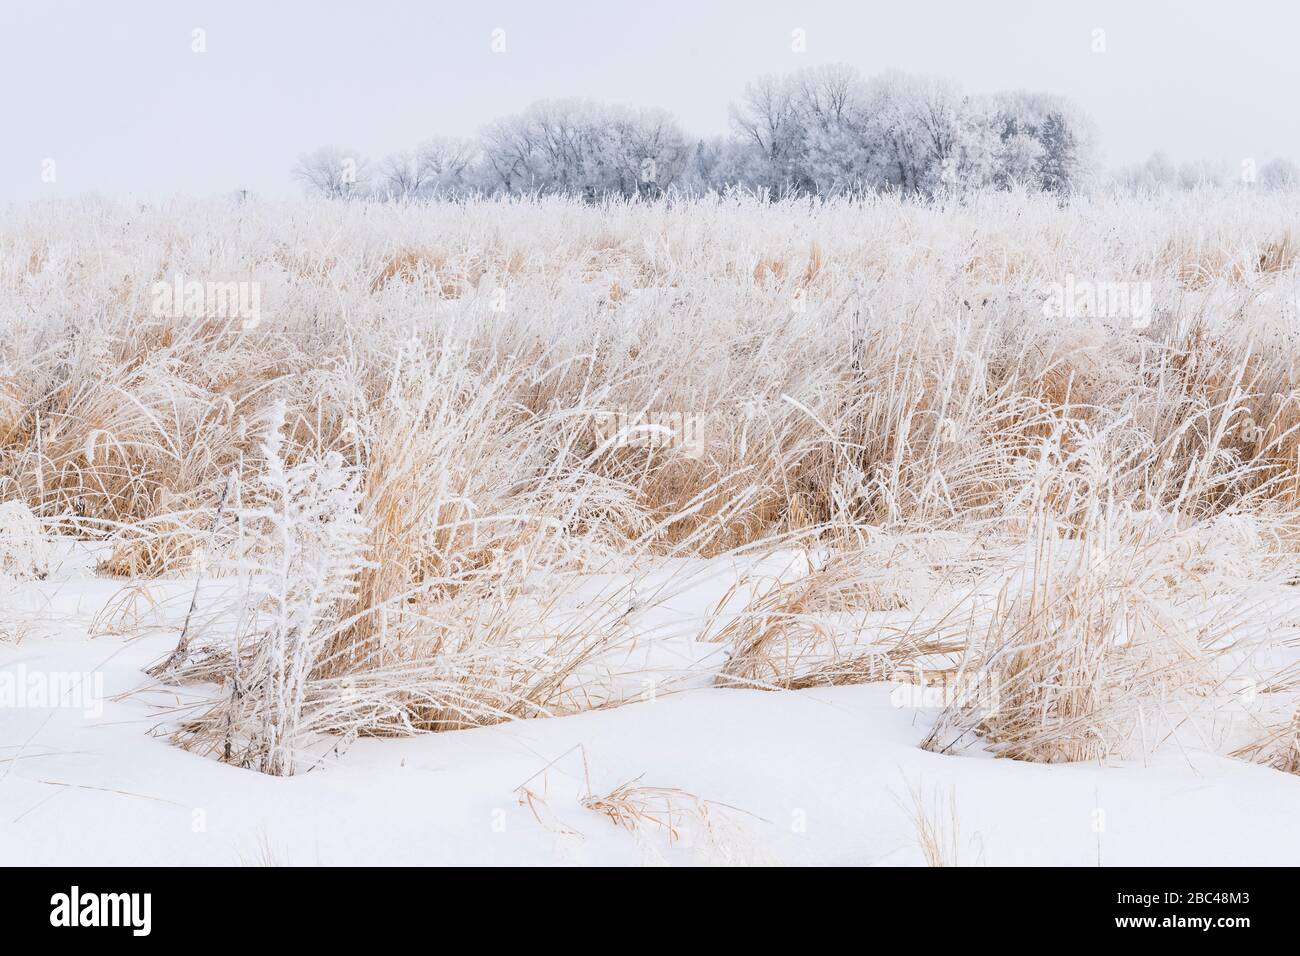 Le givre (givre rime) couvrant les graminées des prairies, hiver, milieu-ouest des États-Unis, par Dominique Braud/Dembinsky photo Assoc Banque D'Images